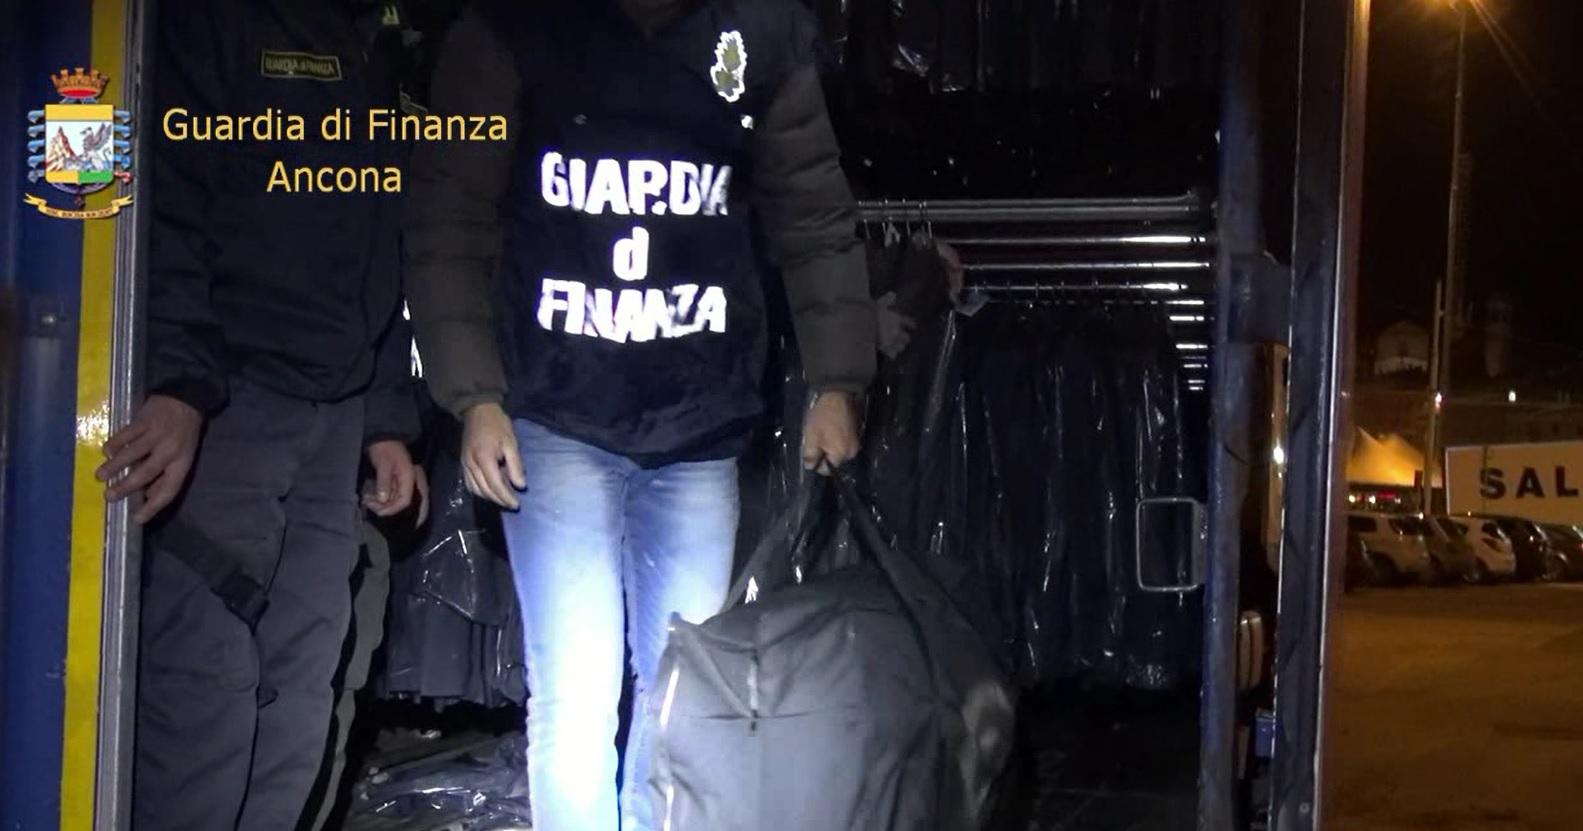 Porto di Ancona, arrestato dalla Finanza camionista con 91 kg di marijuana